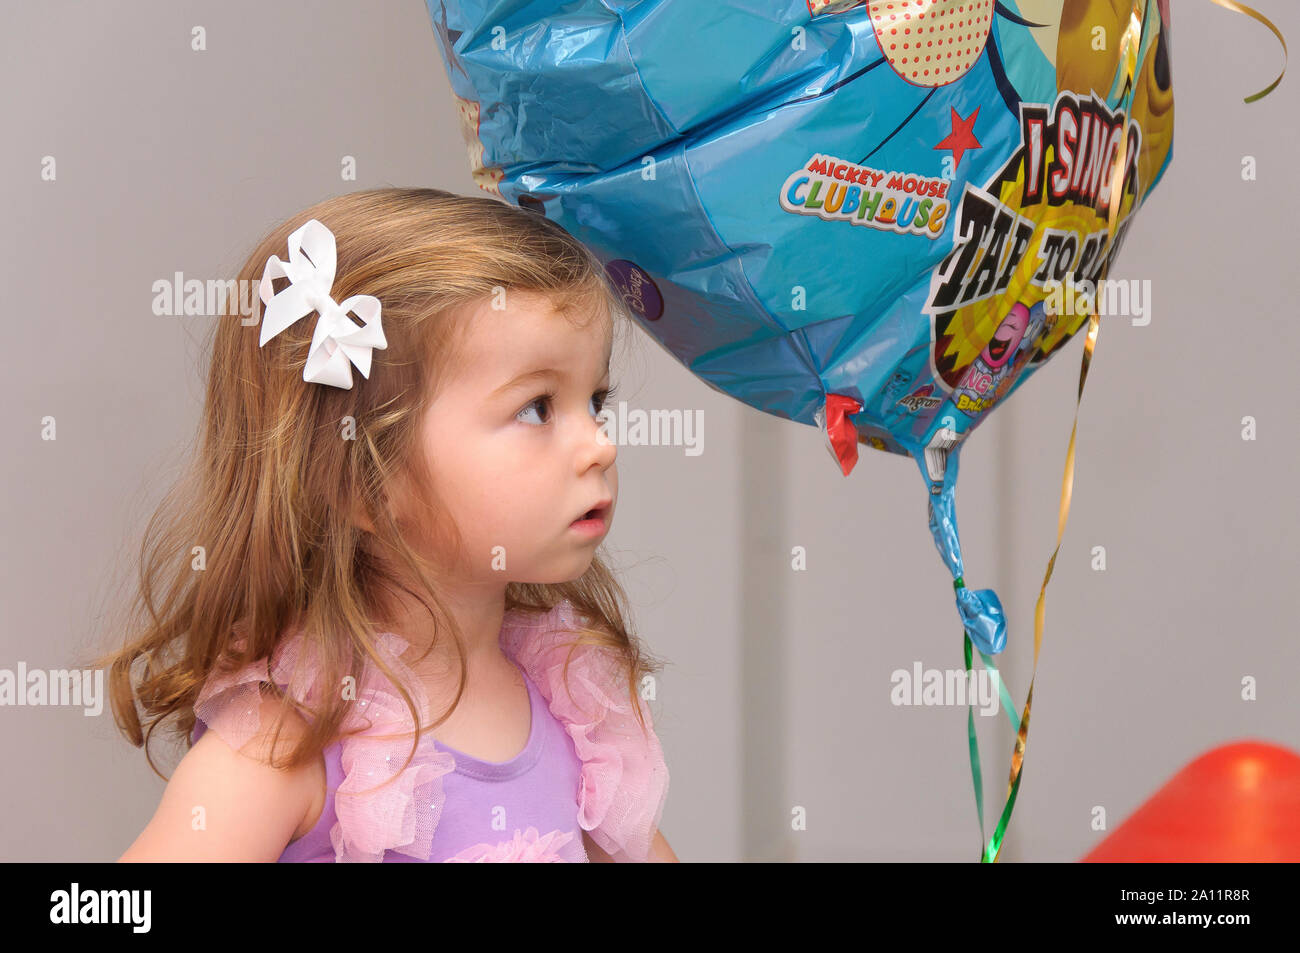 Ein ehrliches, authentisches Porträt eines niedlichen, zwei Jahre alten blonden Mädchens mit einem Ballon auf einer Kinderparty Stockfoto